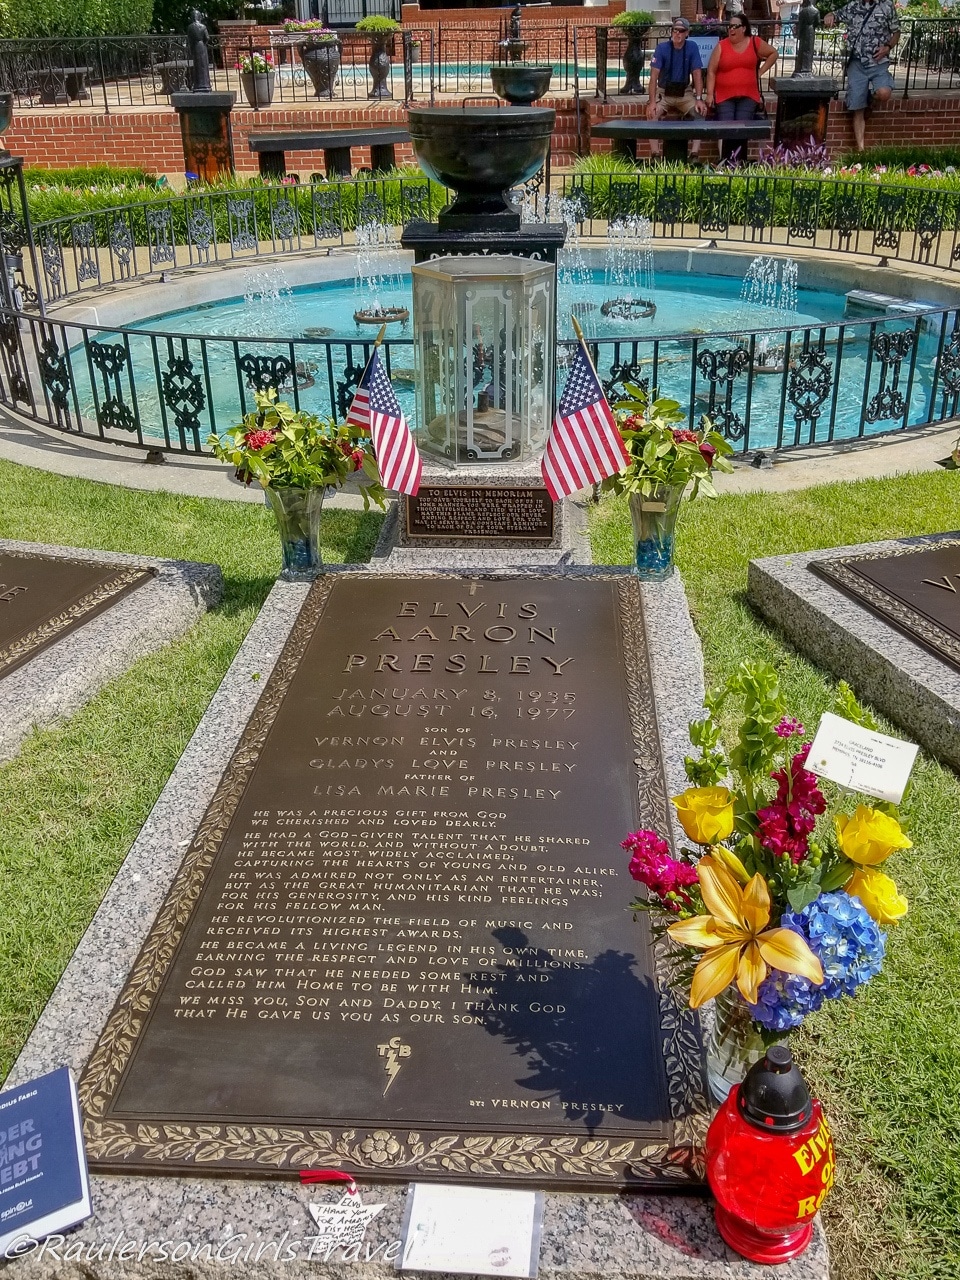 Elvis Presley's Grave at Graceland